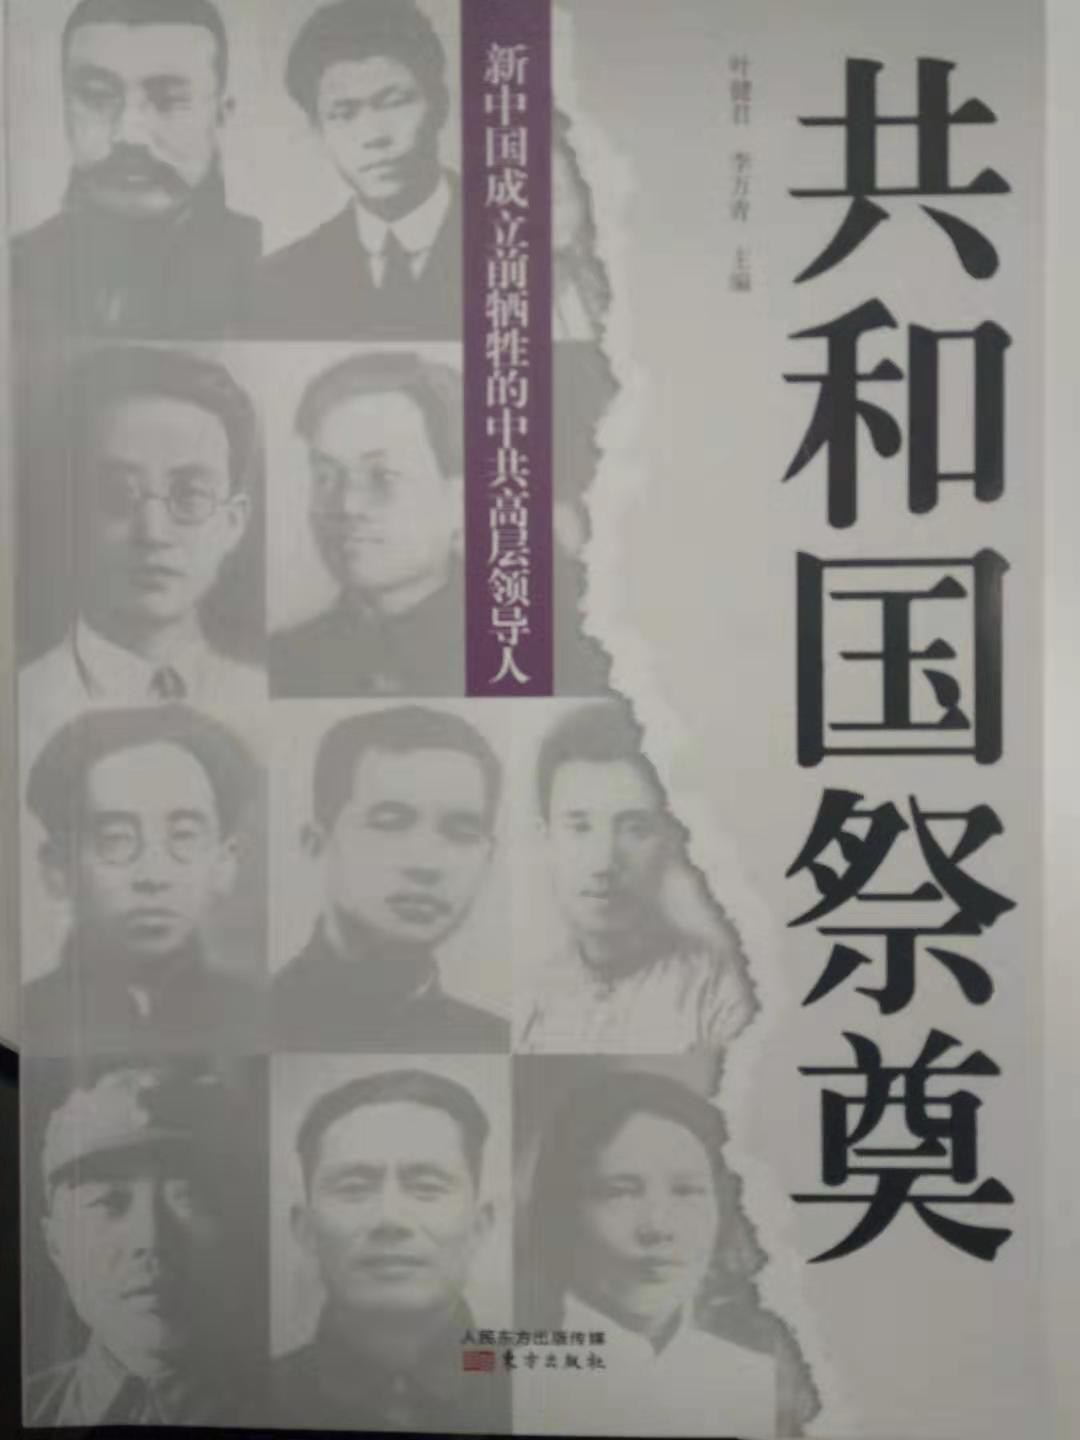 共和国祭奠 新中国成立前牺牲的中共高层领导人